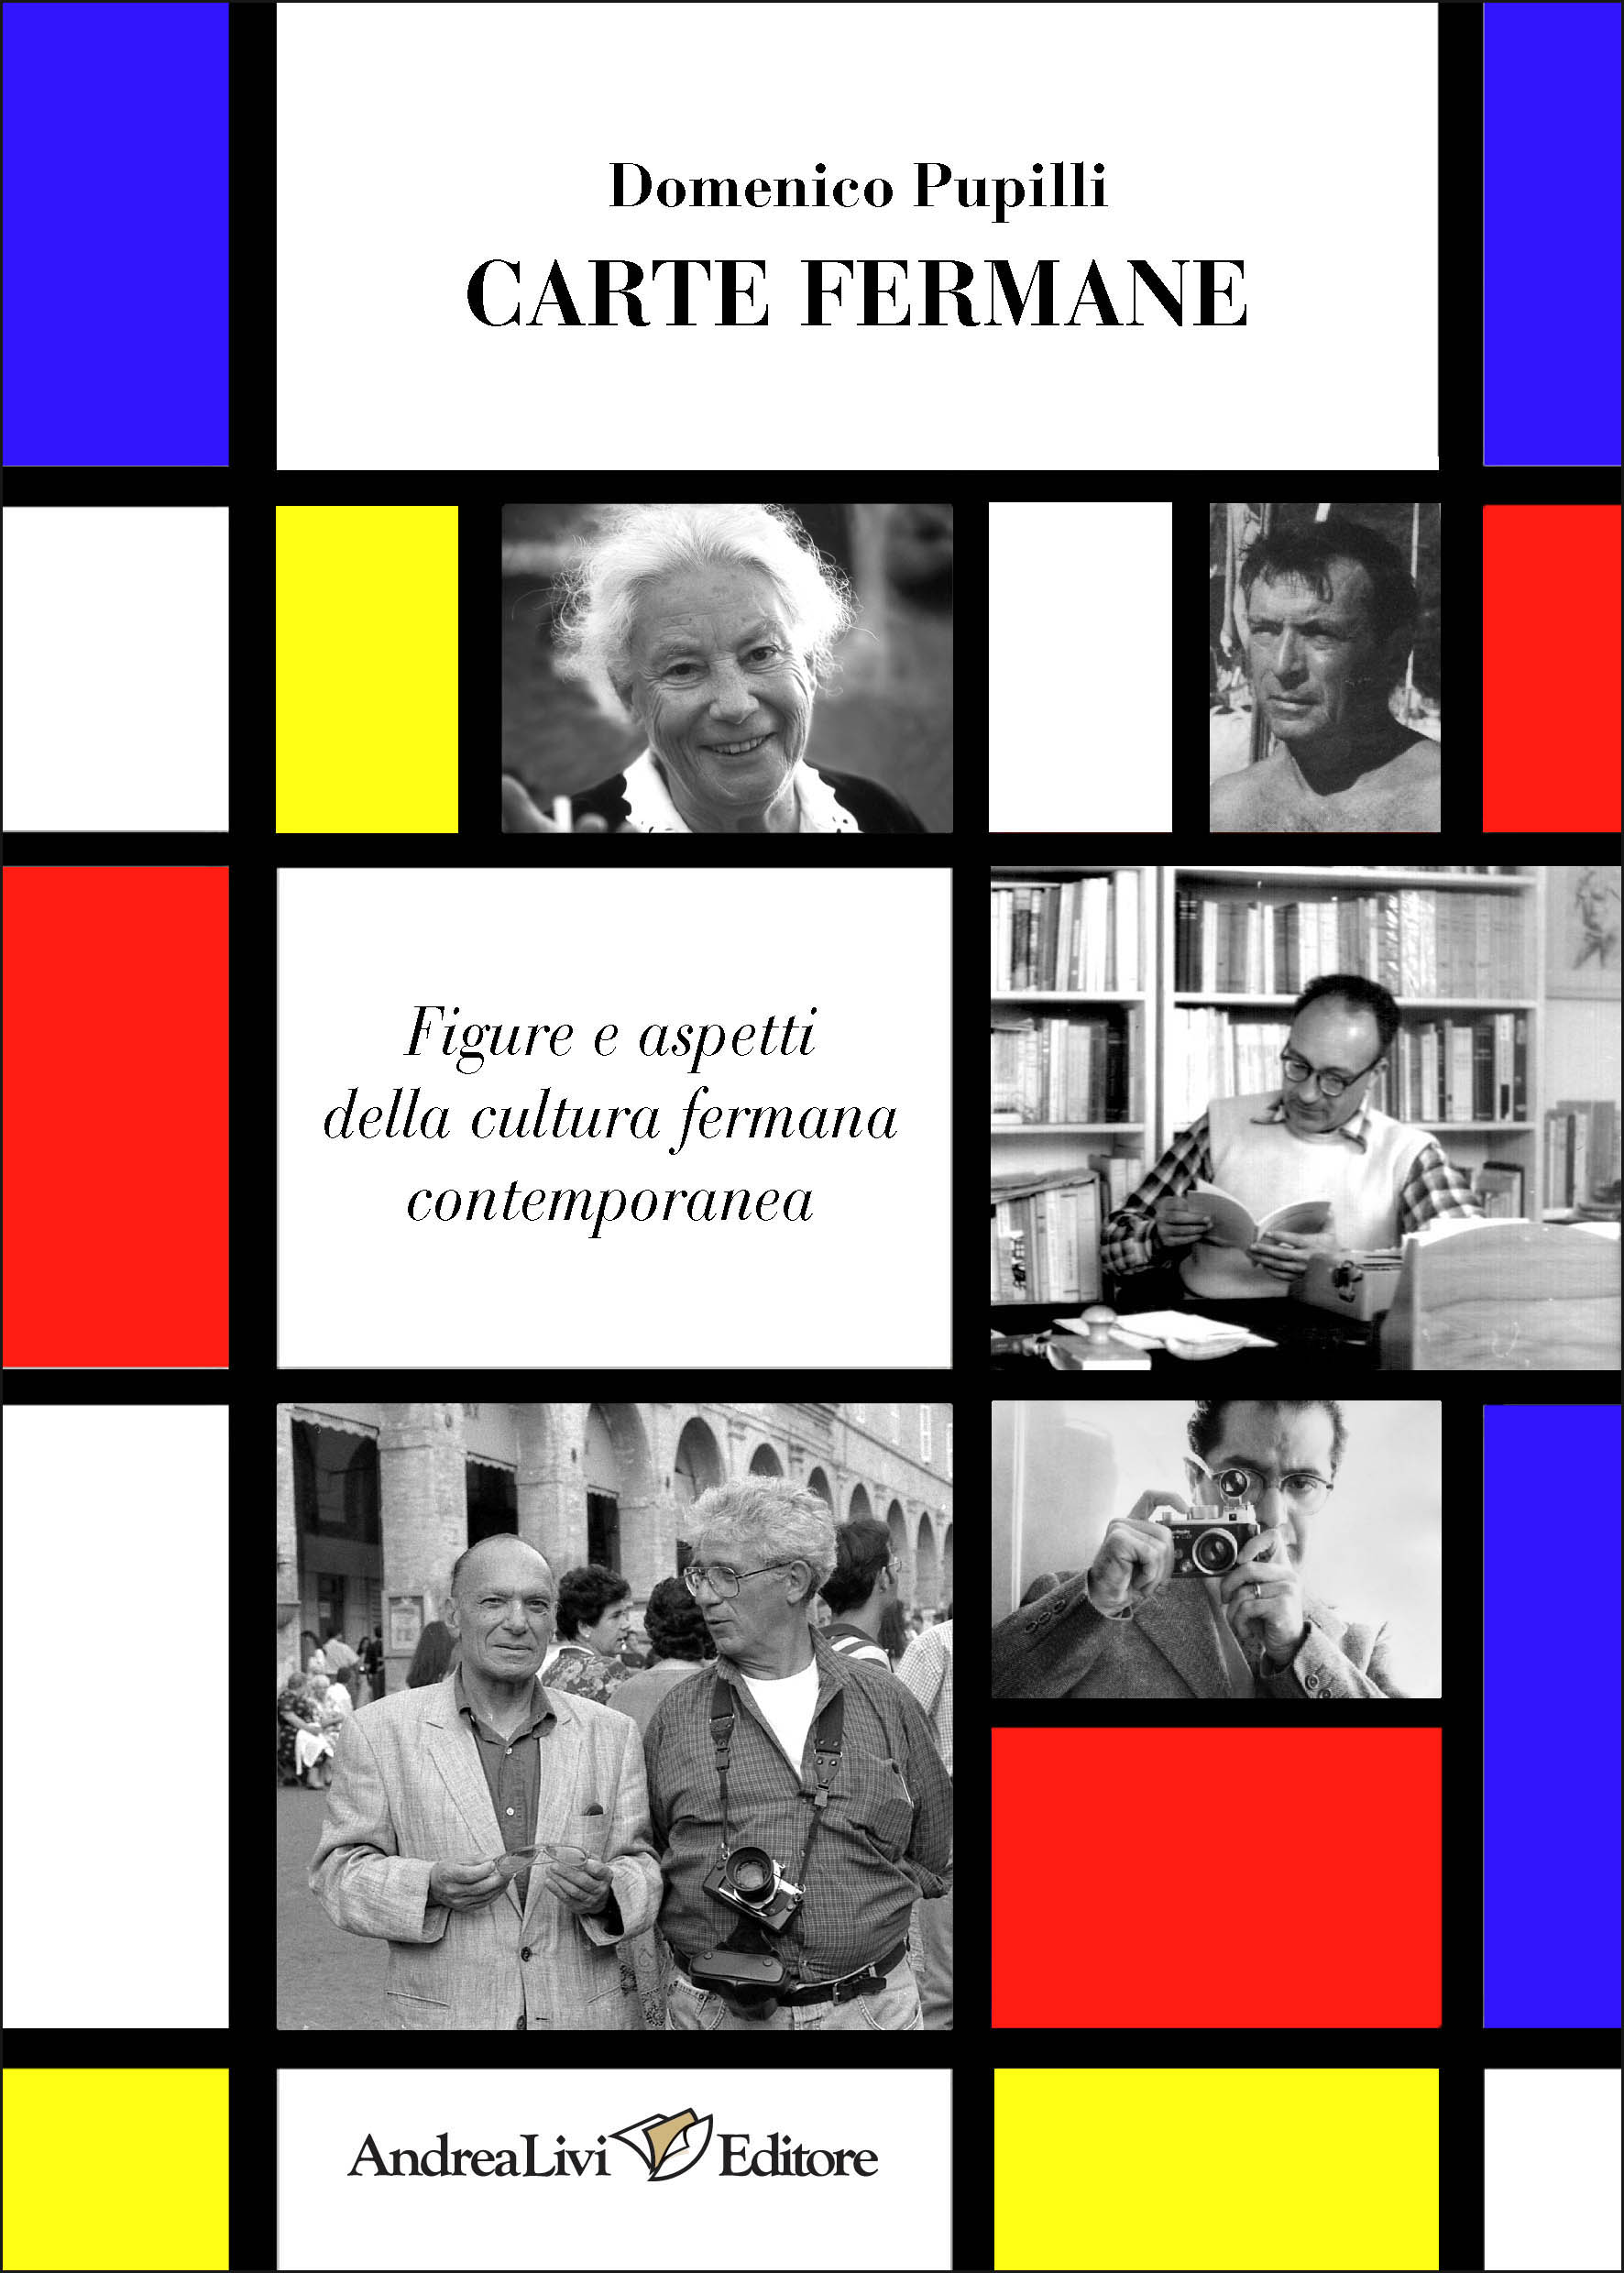 Domenico Pupilli, Carte fermane. Figure e aspetti della cultura fermana contemporanea, introduzione di Alfredo Luzi